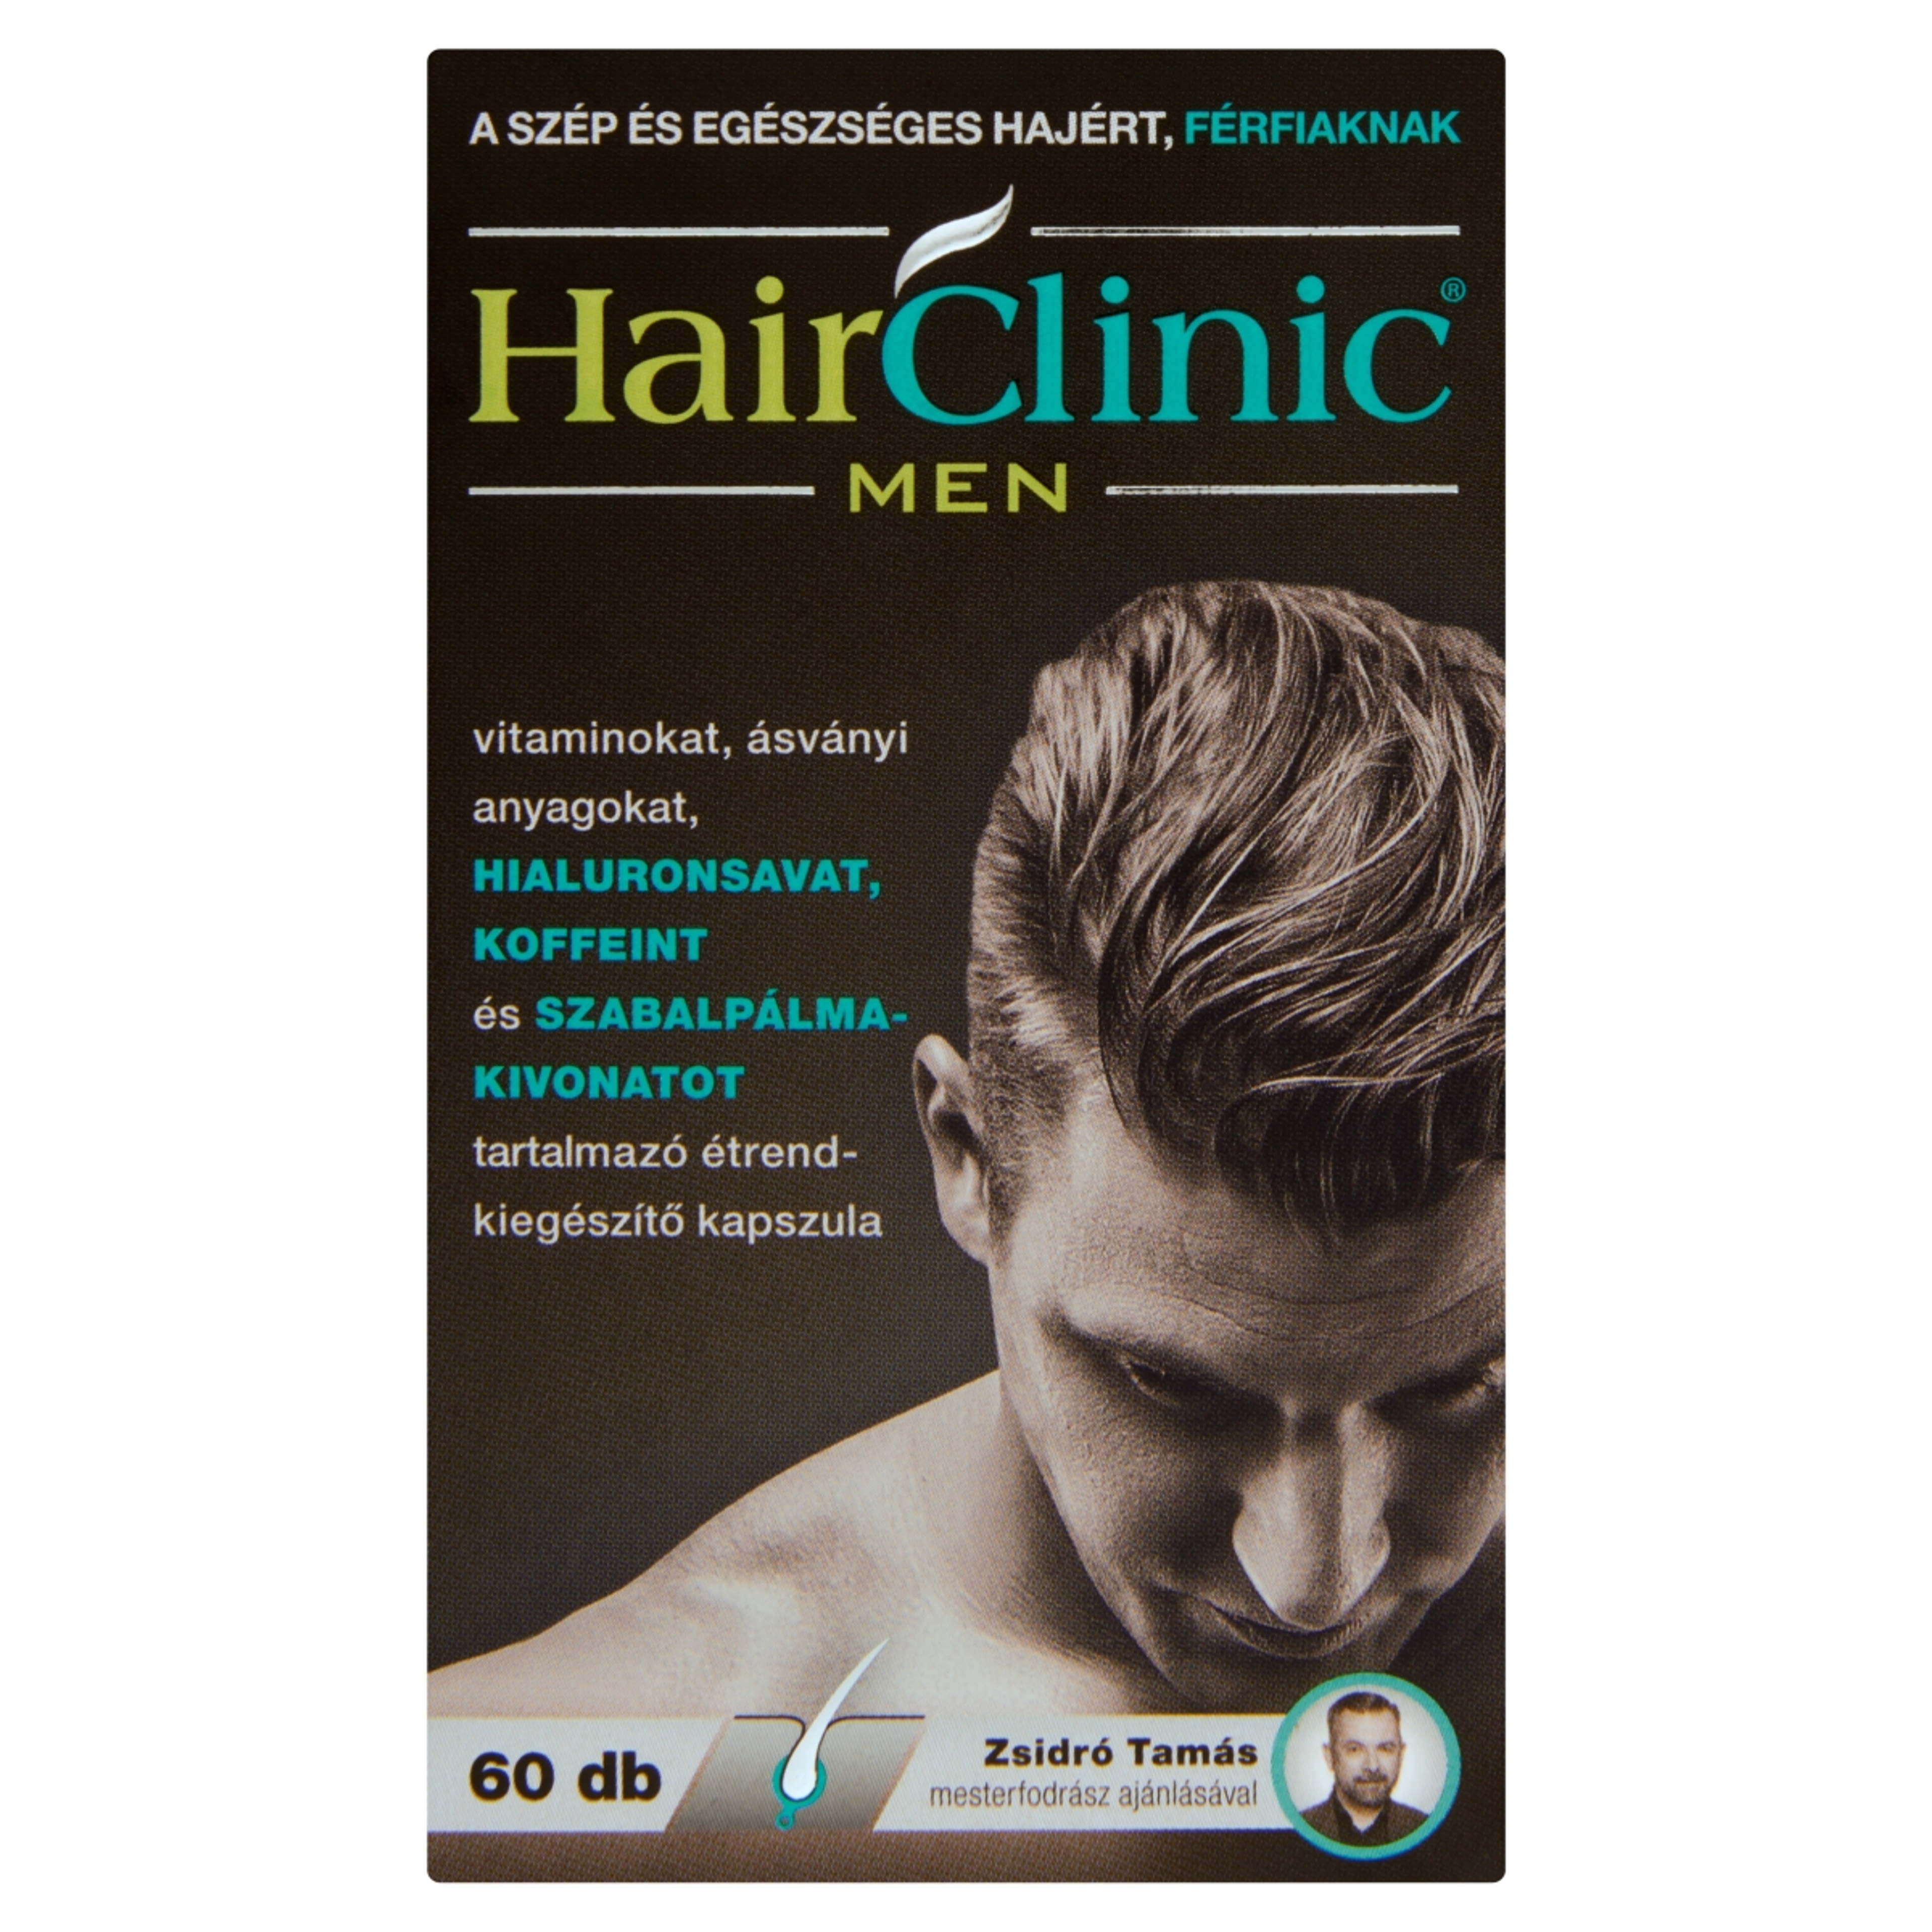 HairClinic Men Étrend-Kiegészítő hialuronsavval, Koffeinnel, Szabadpálma-kivonattal Kapszula (32,4g) - 60 db